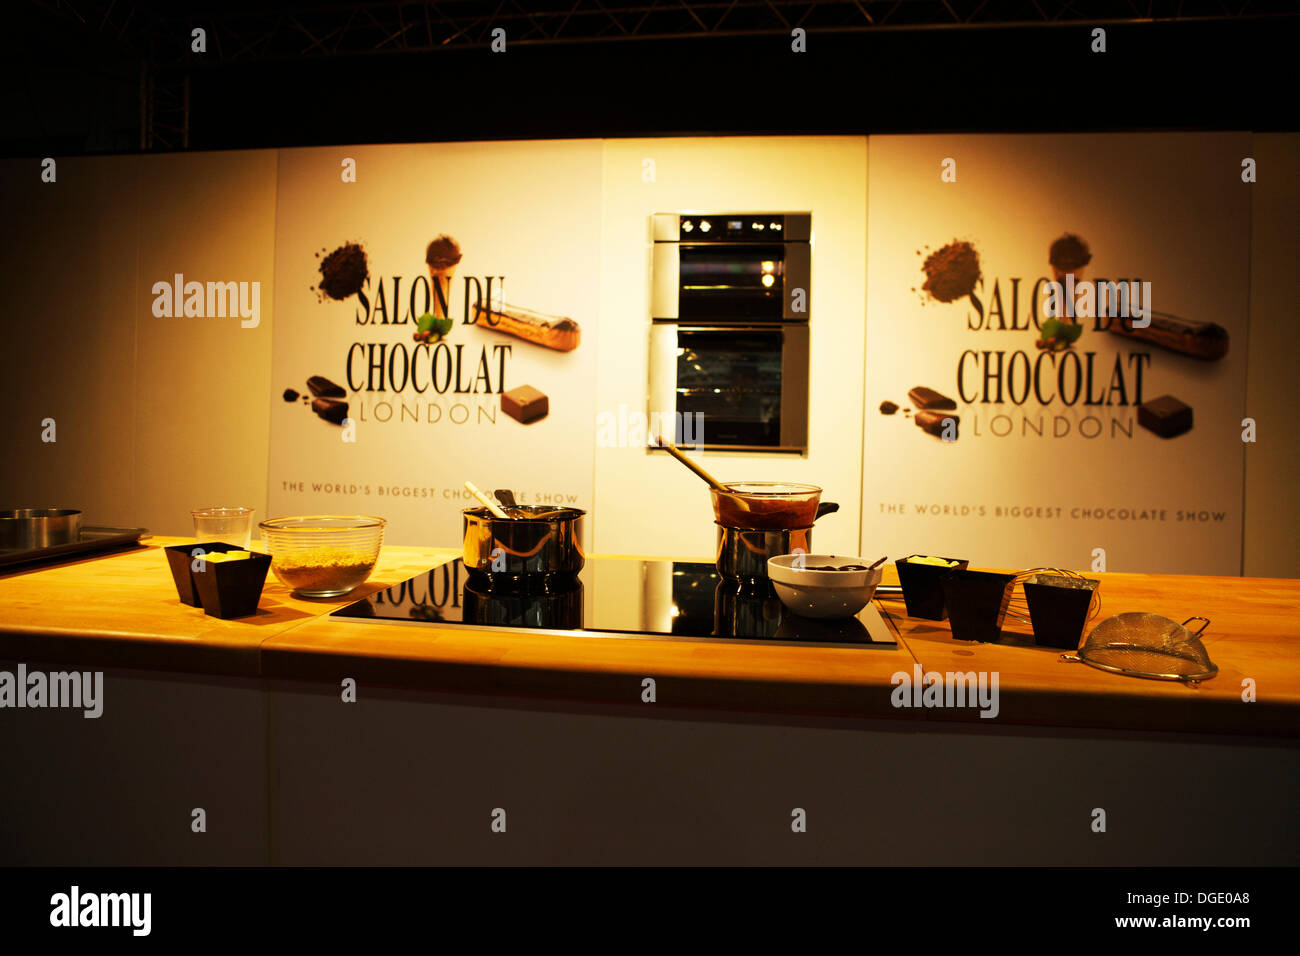 Olympia, Londres, Royaume-Uni 18 octobre 2013. Salon du Chocolat - Le plus grand salon du chocolat. Crédit : Tony Farrugia/Alamy Live News Banque D'Images